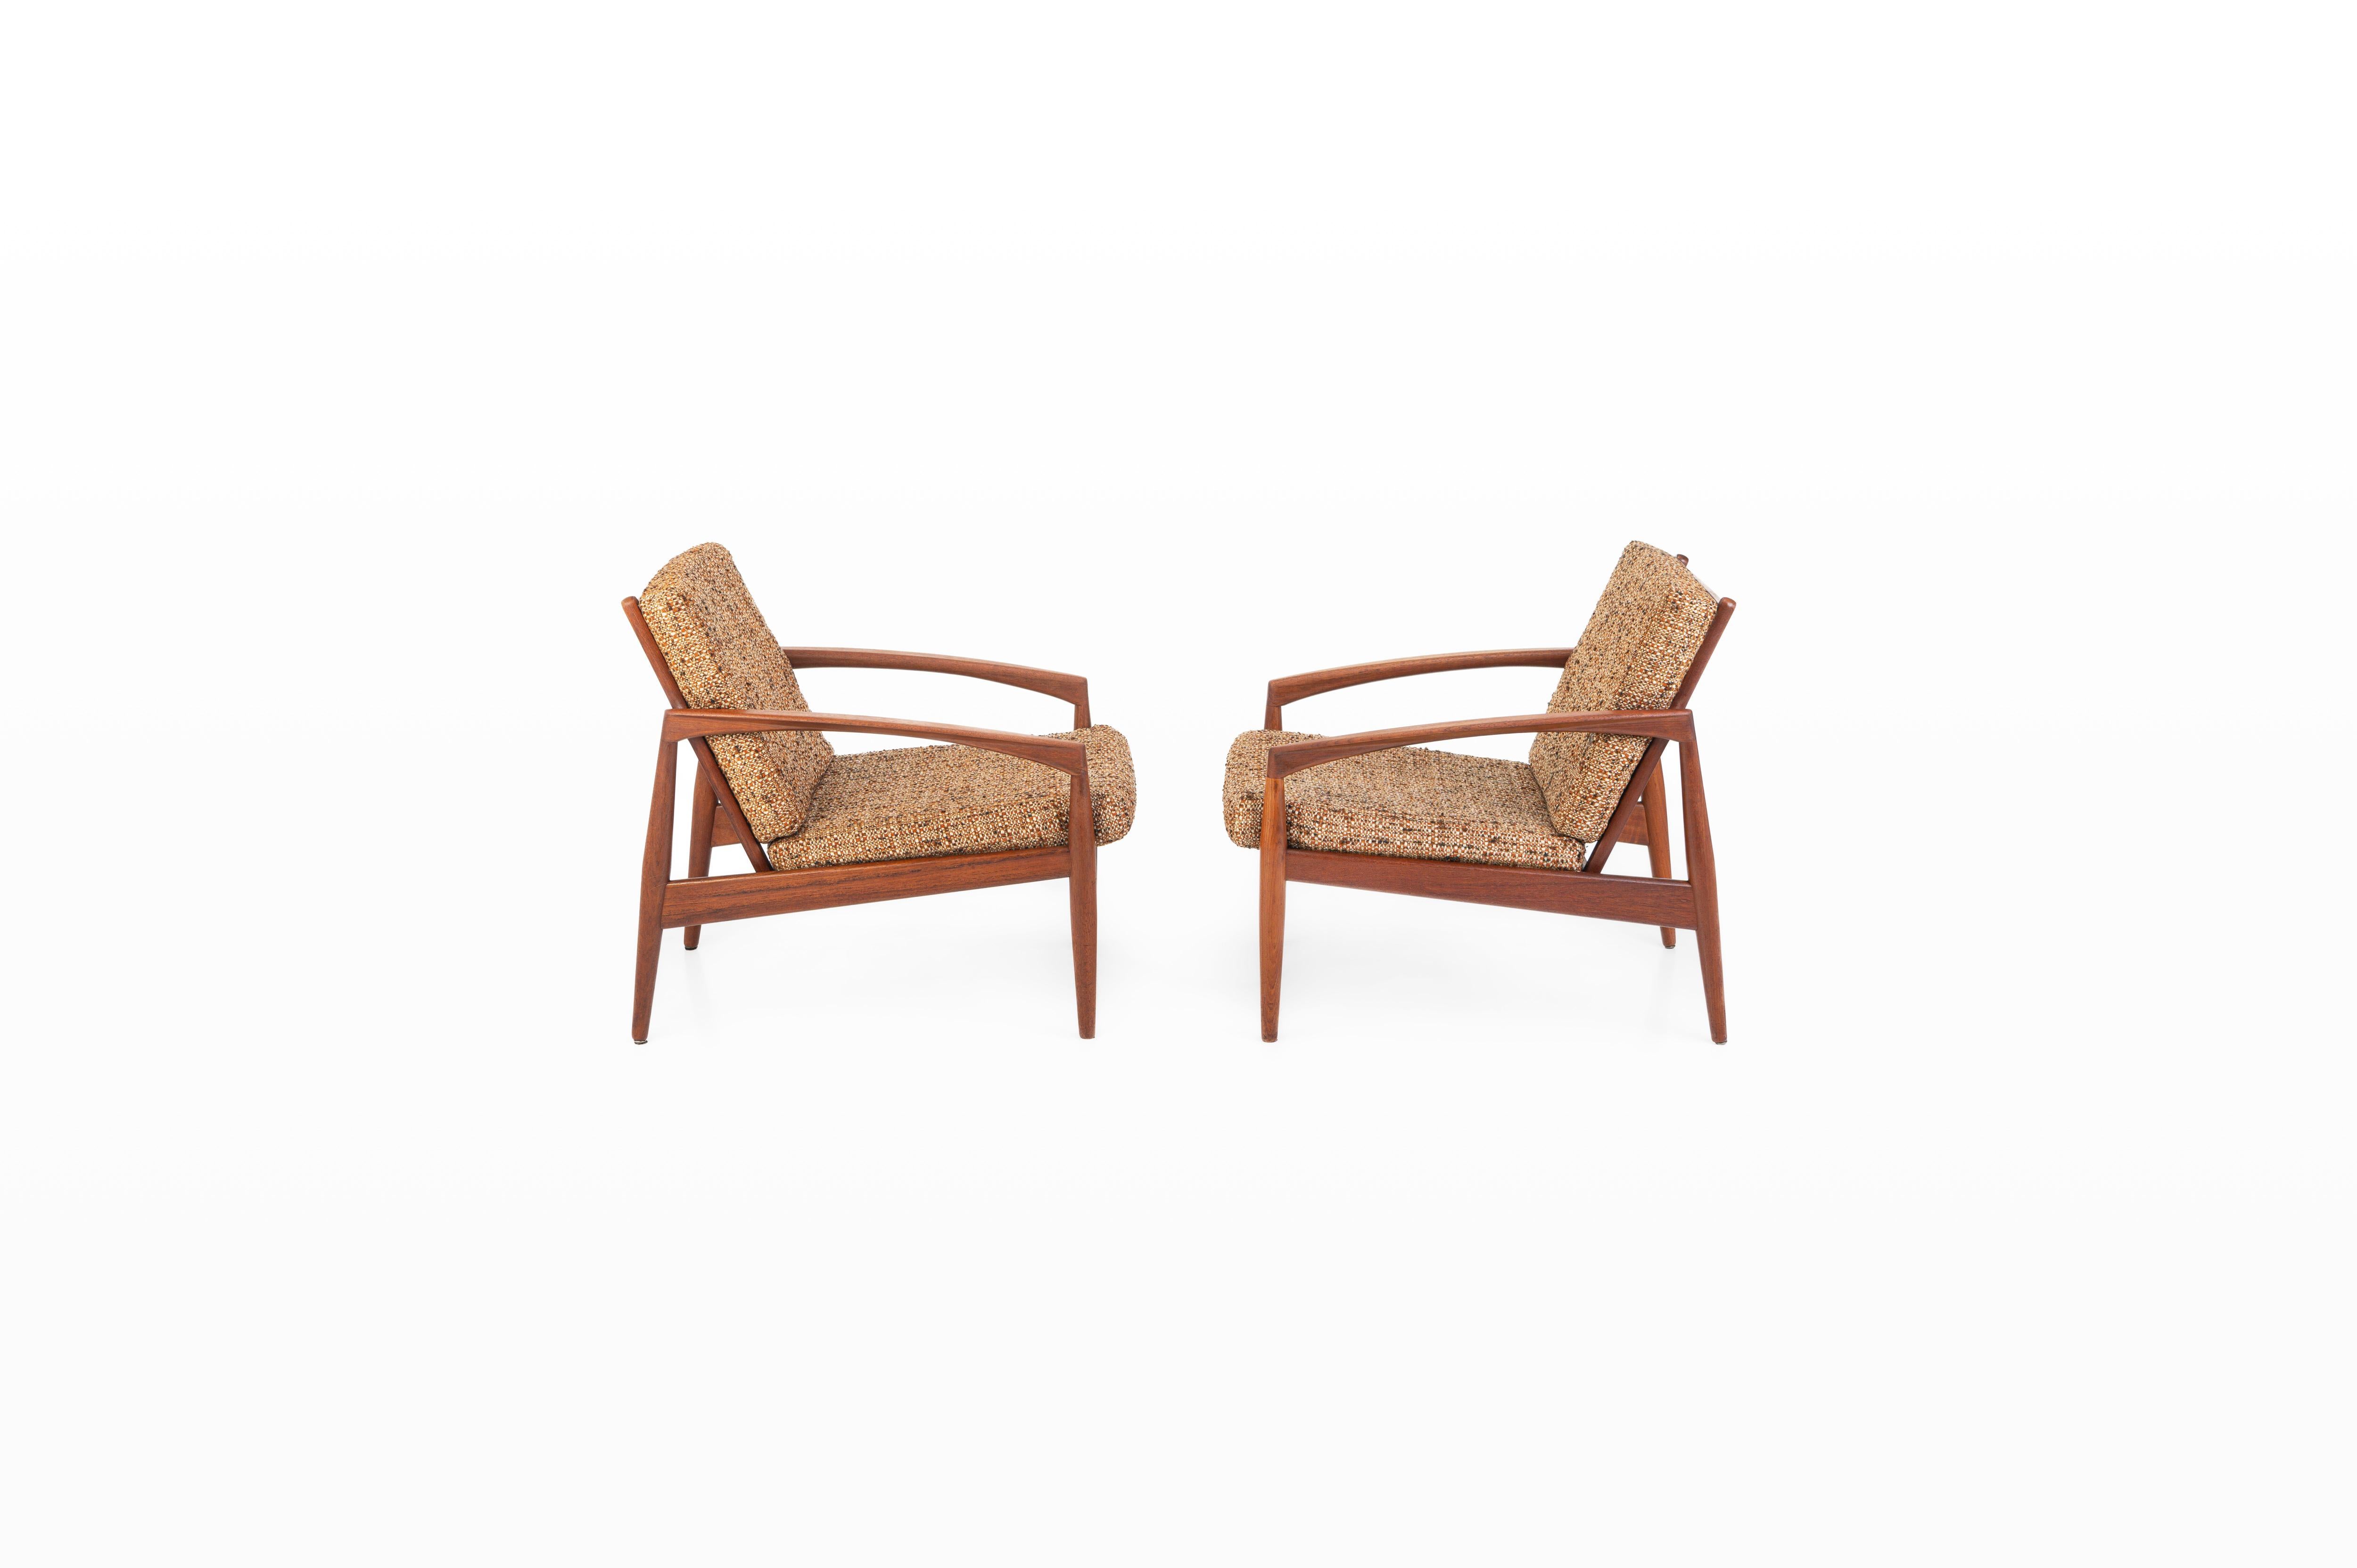 Ein Satz von zwei Vintage Paper Knife Stühlen, entworfen von Kai Kristiansen für Magnus Olesen in Dänemark. Diese Sessel wurden 1955 entworfen. Sie haben einen Rahmen aus Teakholz und ein Mischgewebe mit warmen Braun-, Beige- und